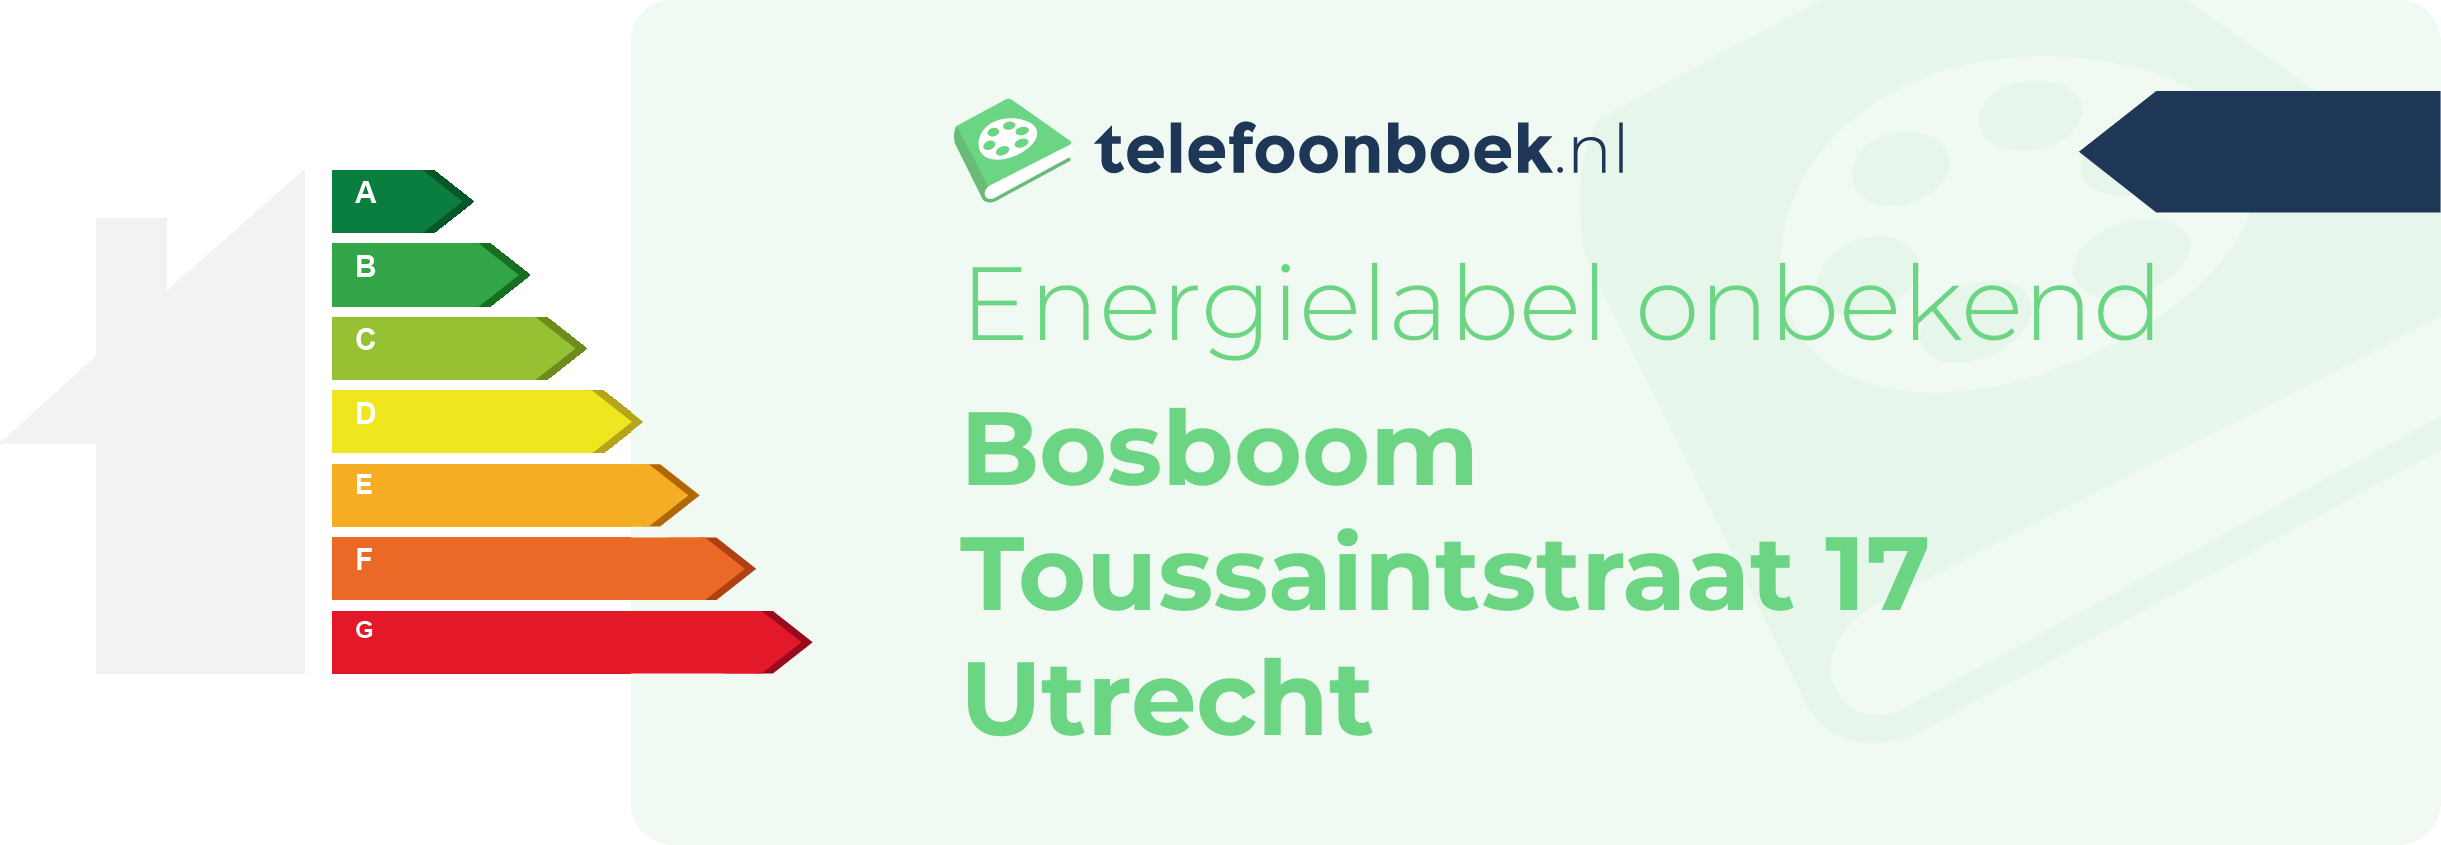 Energielabel Bosboom Toussaintstraat 17 Utrecht